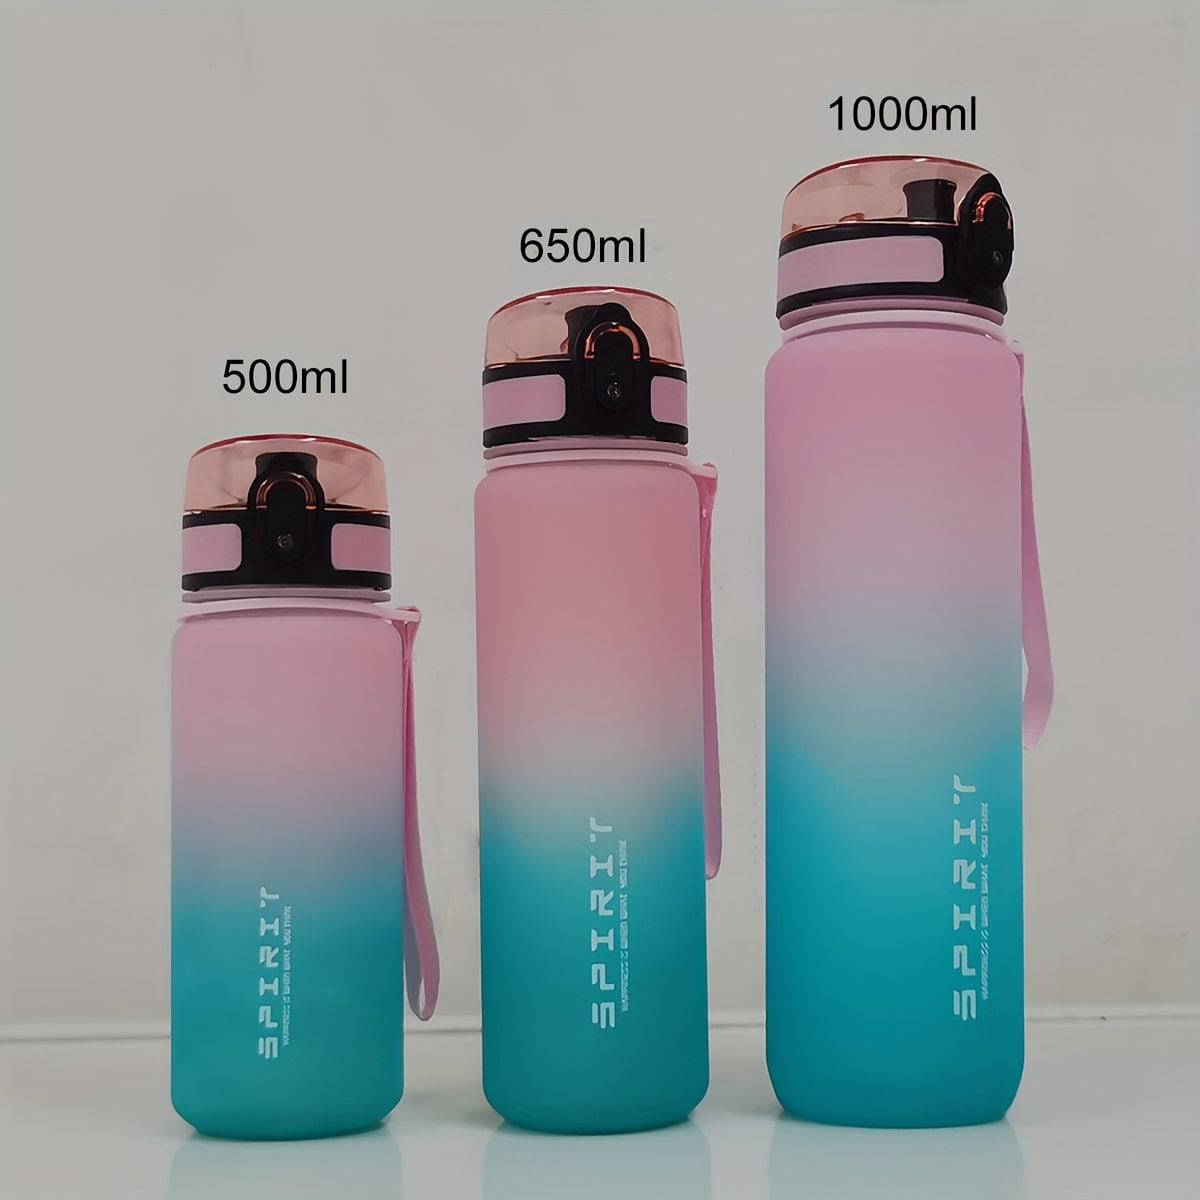 Auslaufsichere, tragbare Plastik-Wasserflasche für Outdoor-Sport, Fitness und Reisen - 500ml/650ml/1000ml